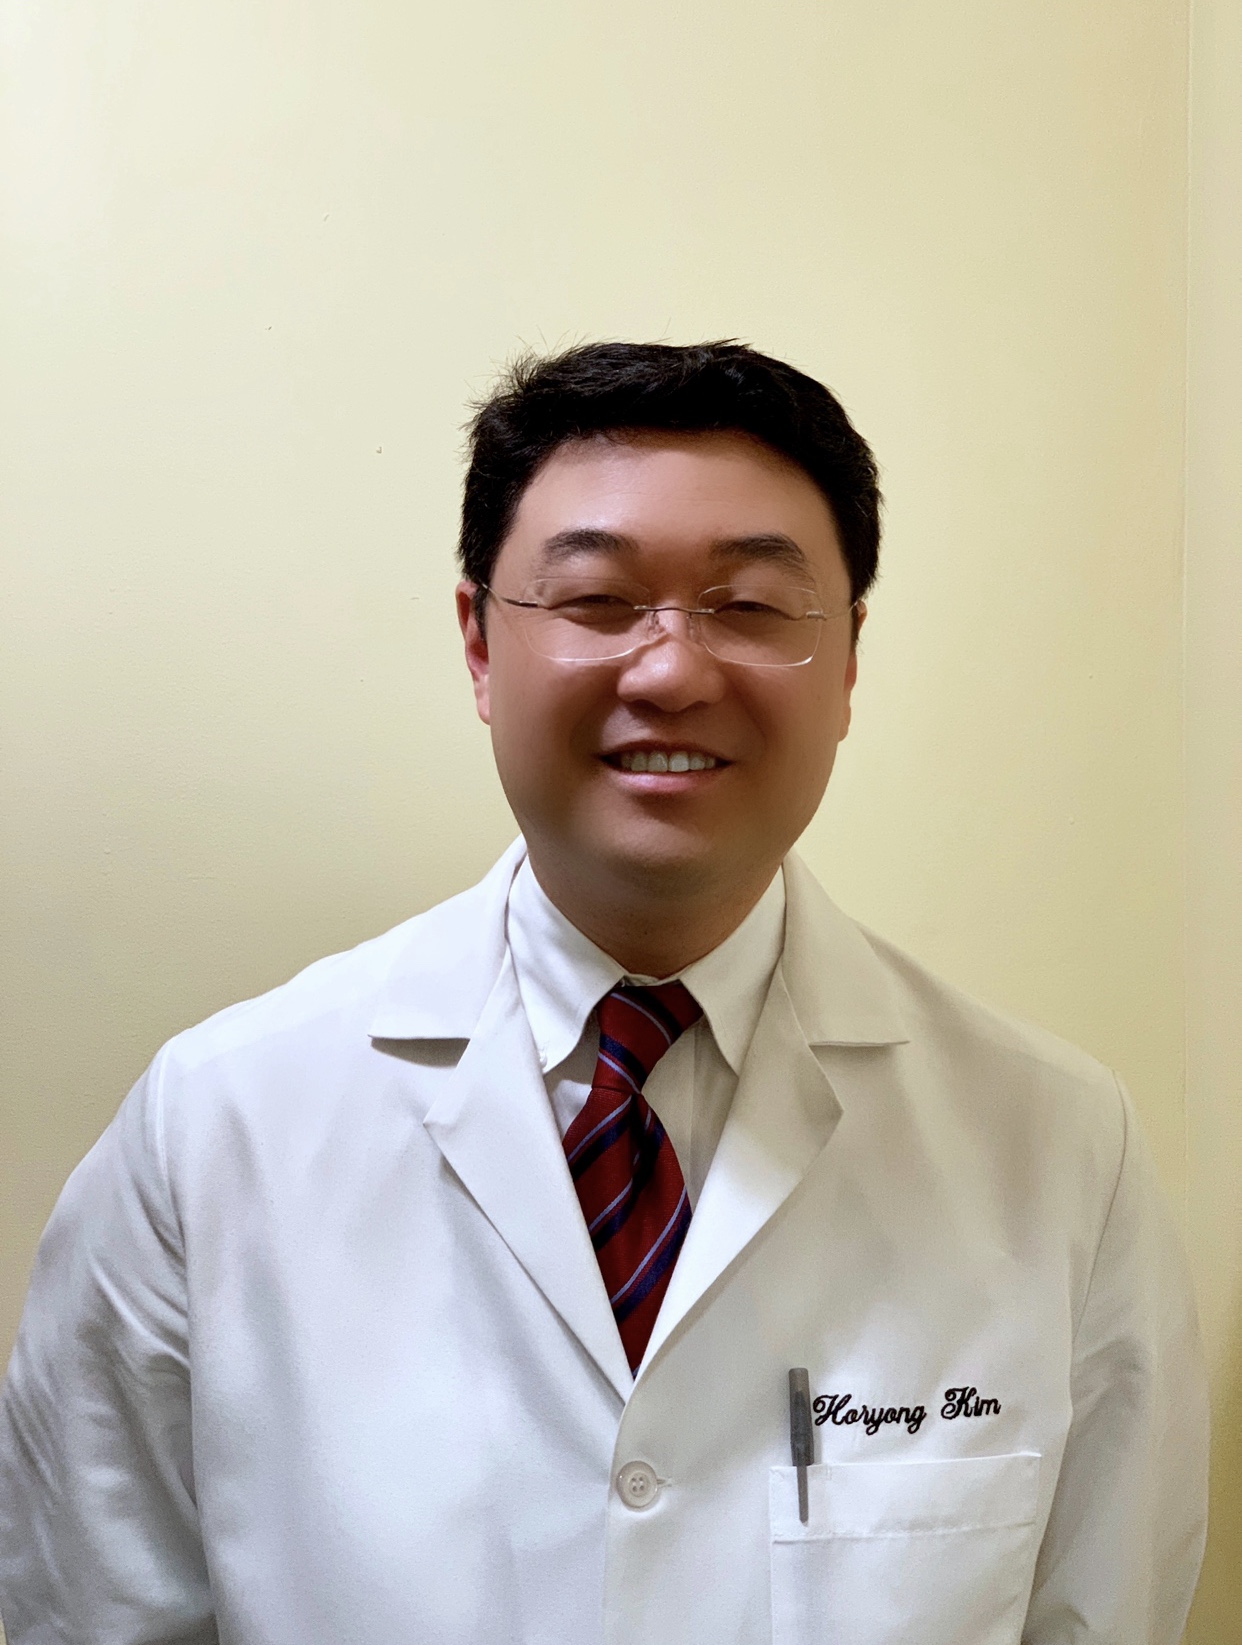 Dr. Horyong Kim